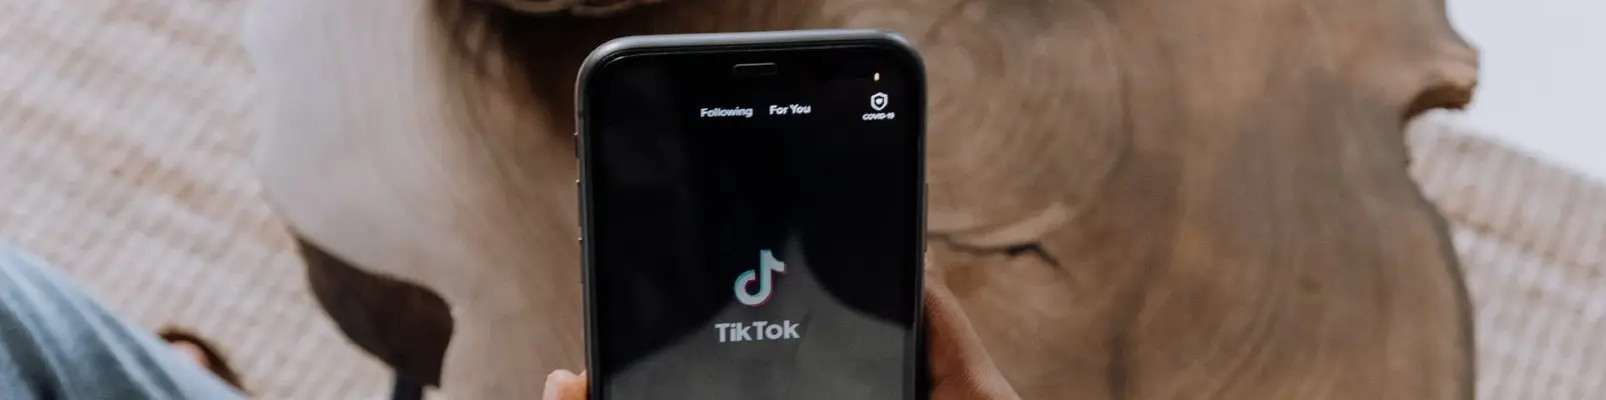 TikTok - Aplicativo do momento 